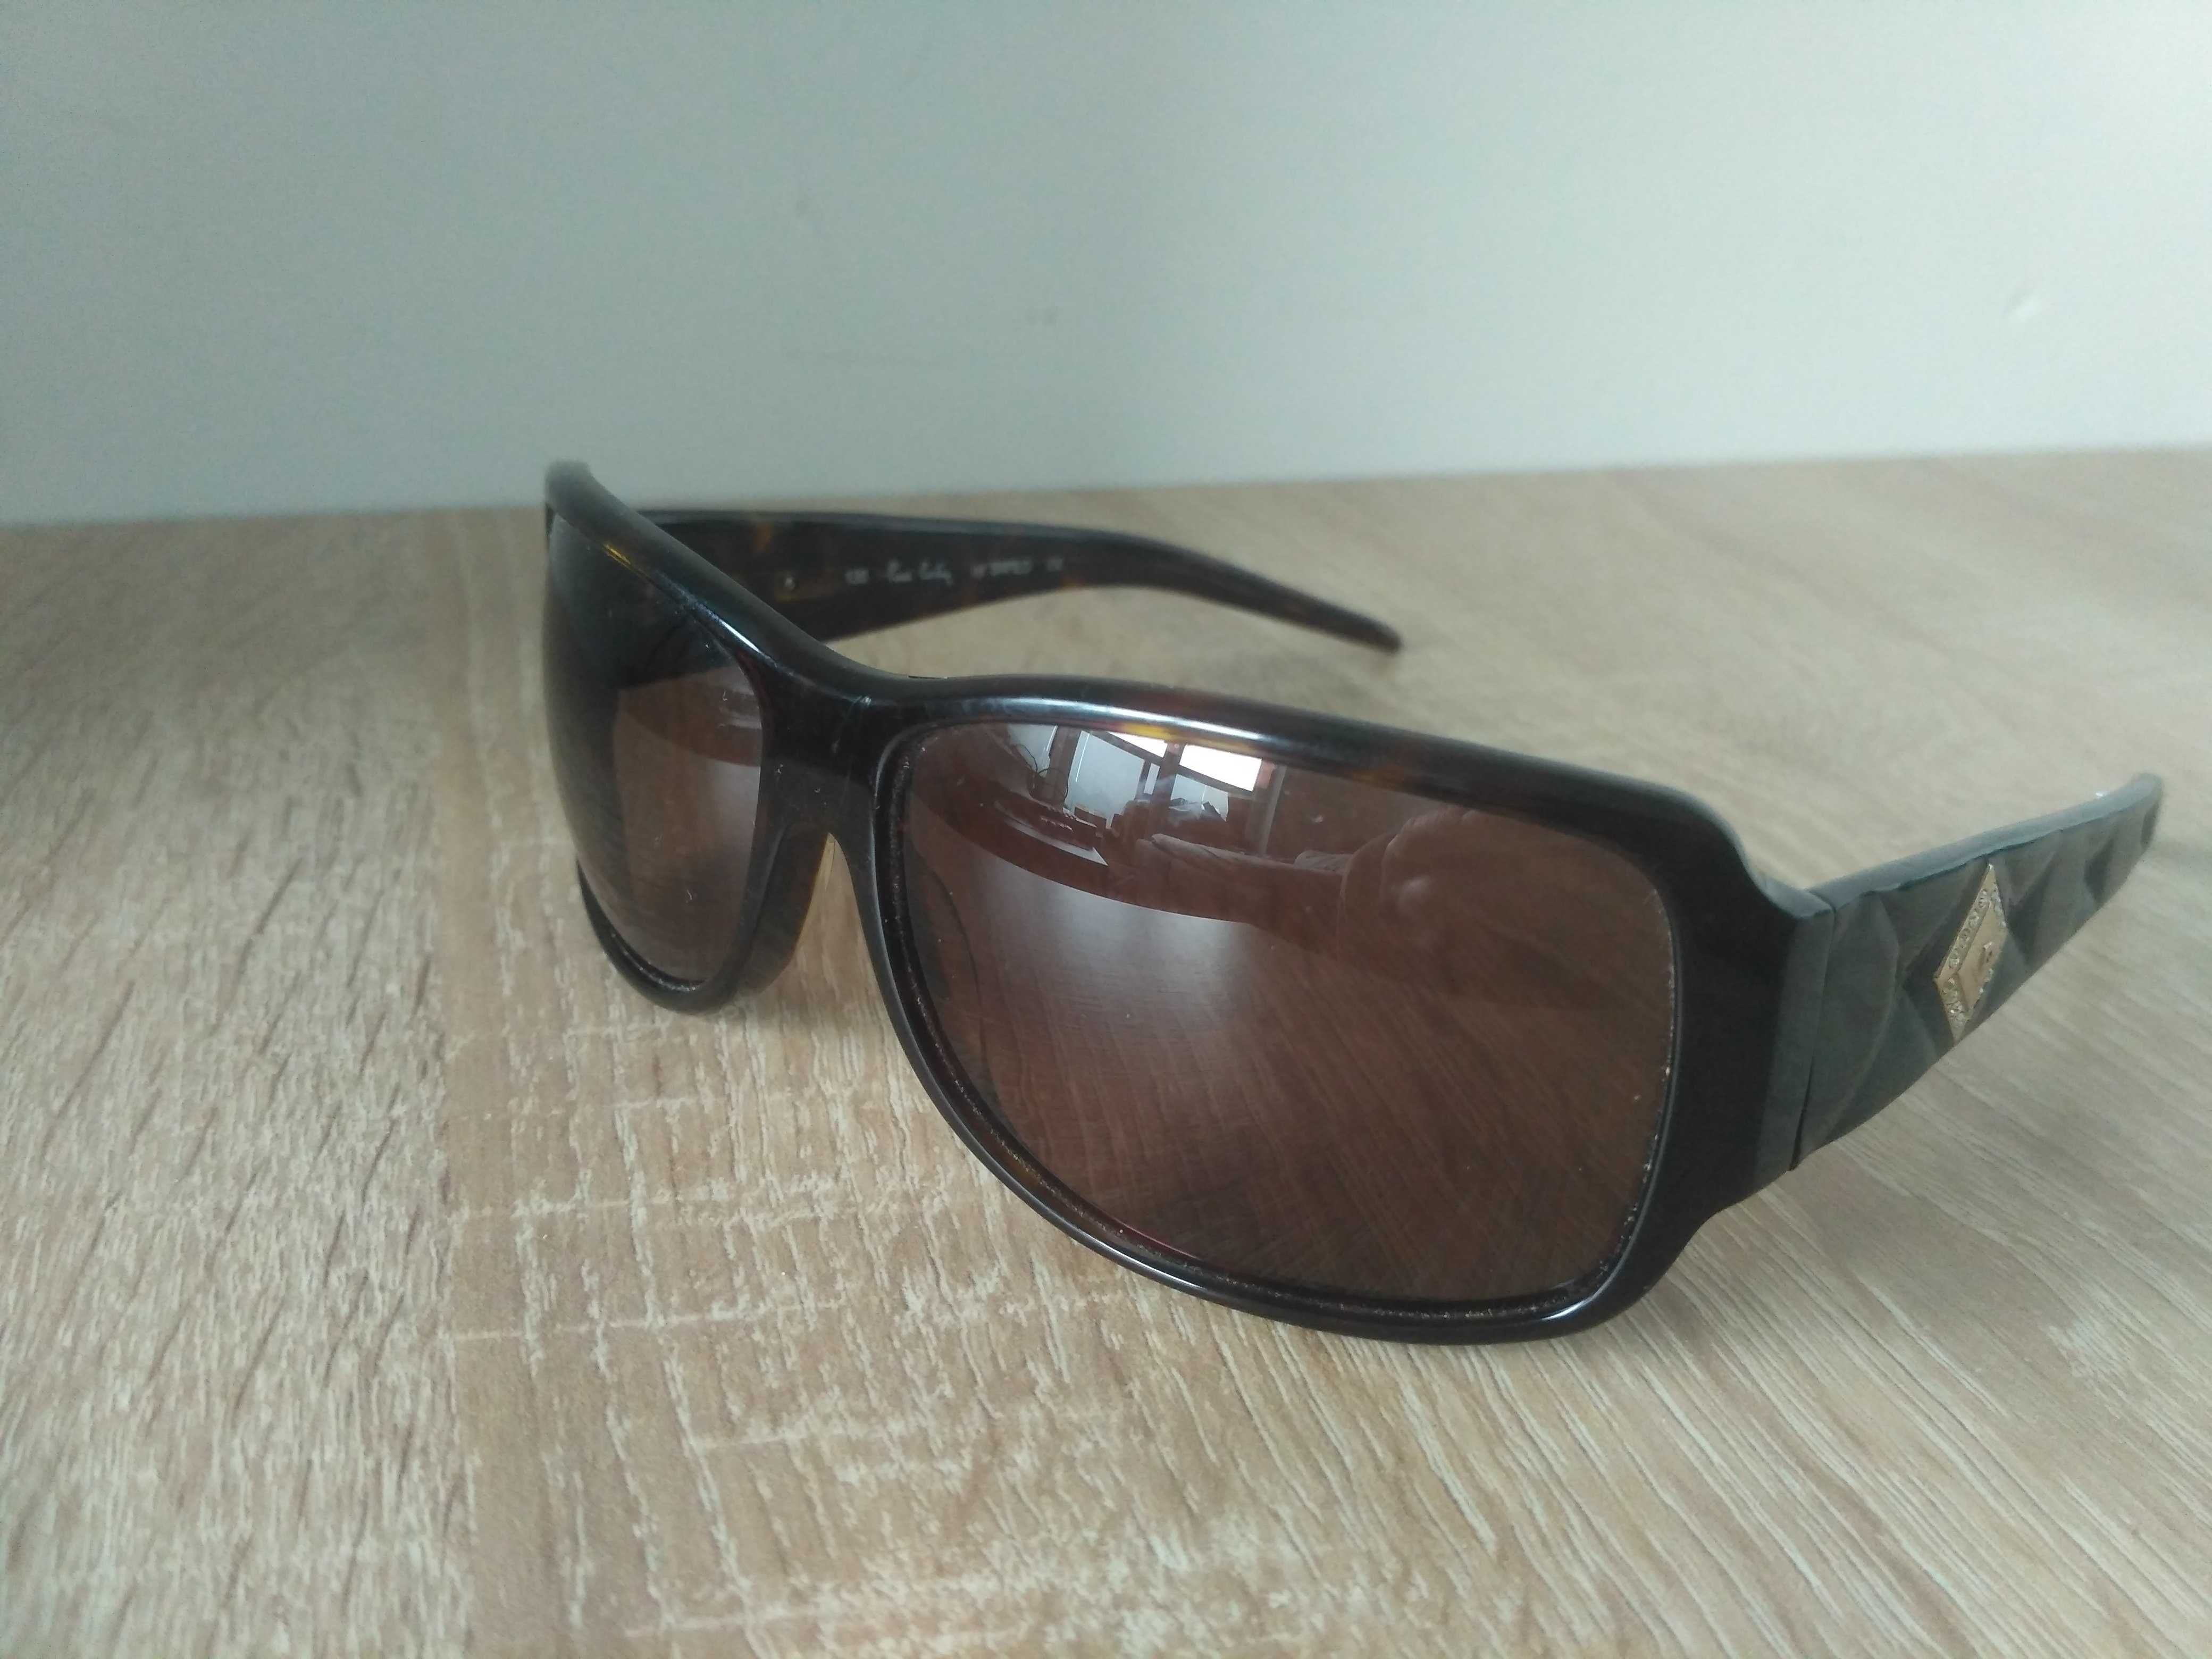 Brązowe okulary przeciwsłoneczne, marka Pierre Cardin PC 8201/S